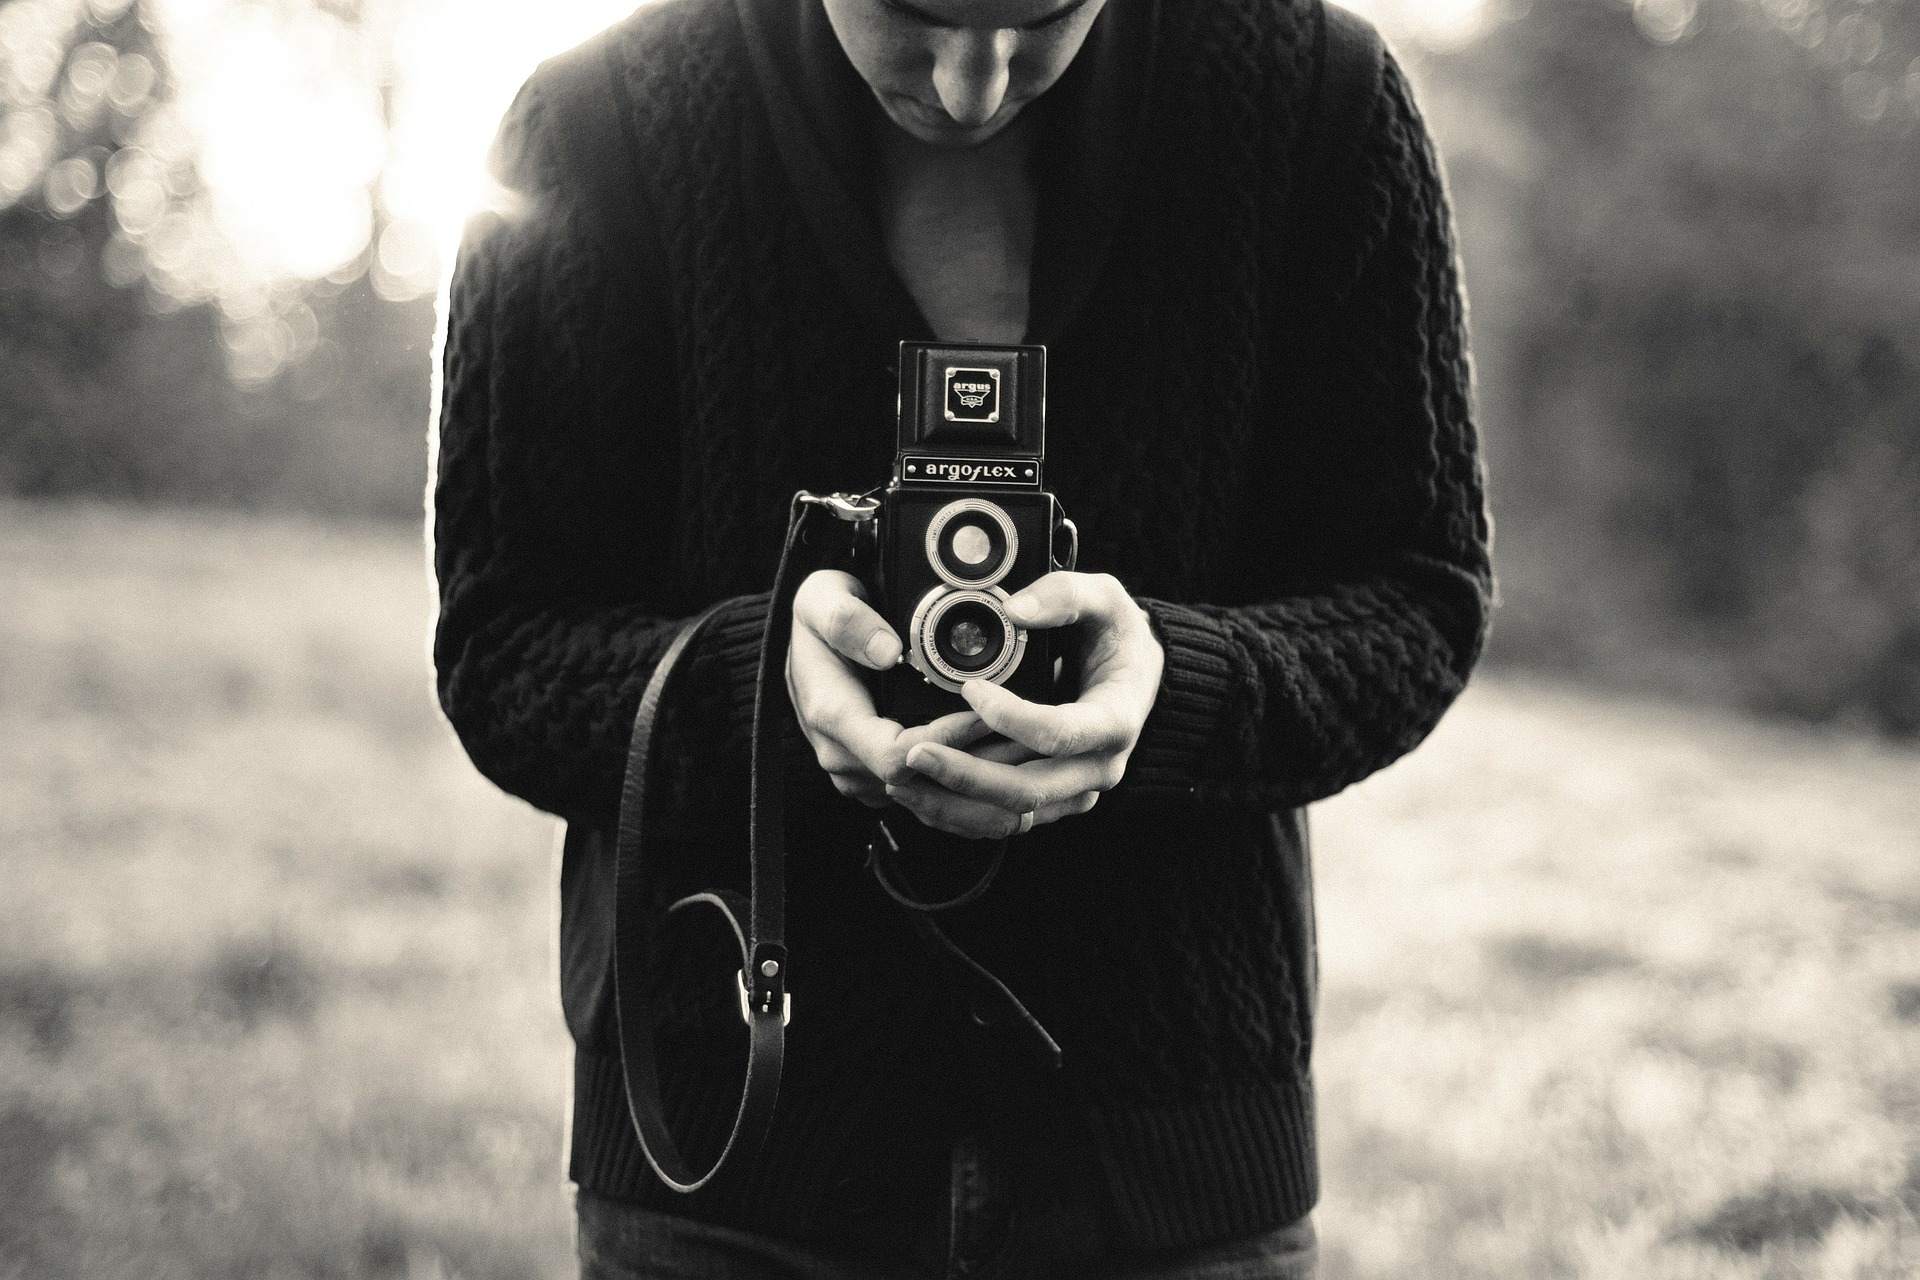 Ein Bild von einem Fotografen, der eine Kamera hält